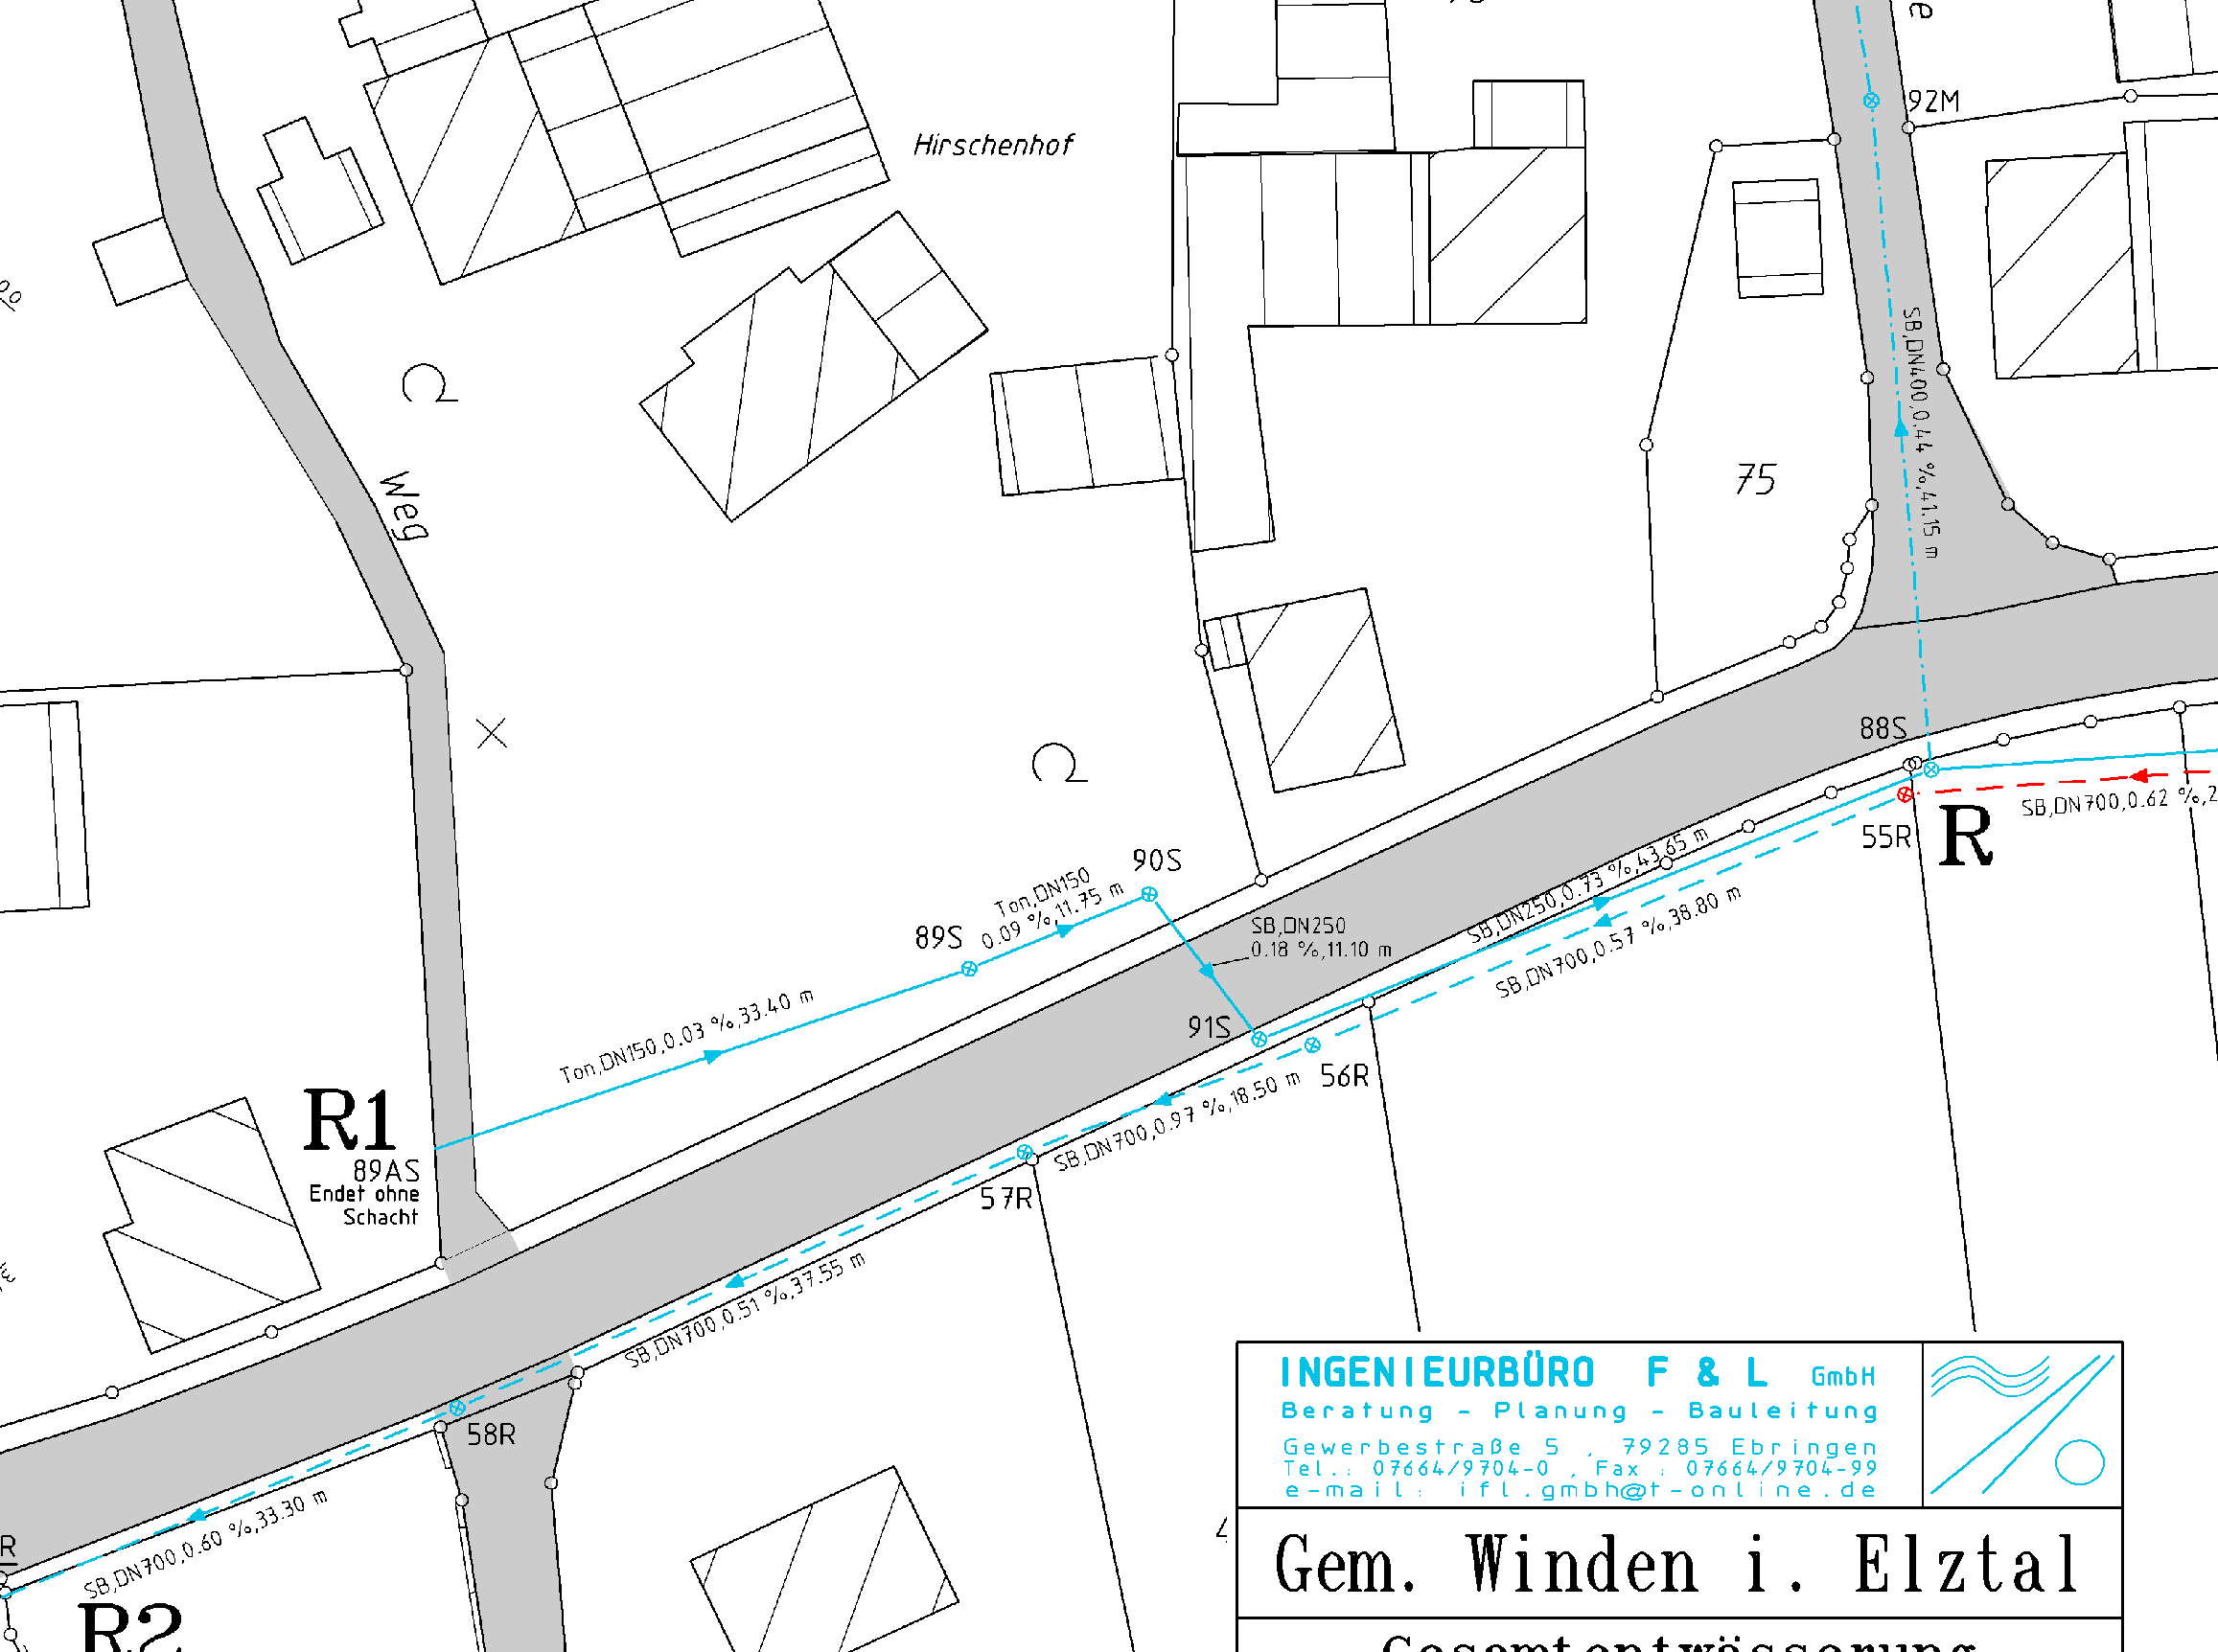 Kanallageplan der Gemeinde Winden, Auszug.